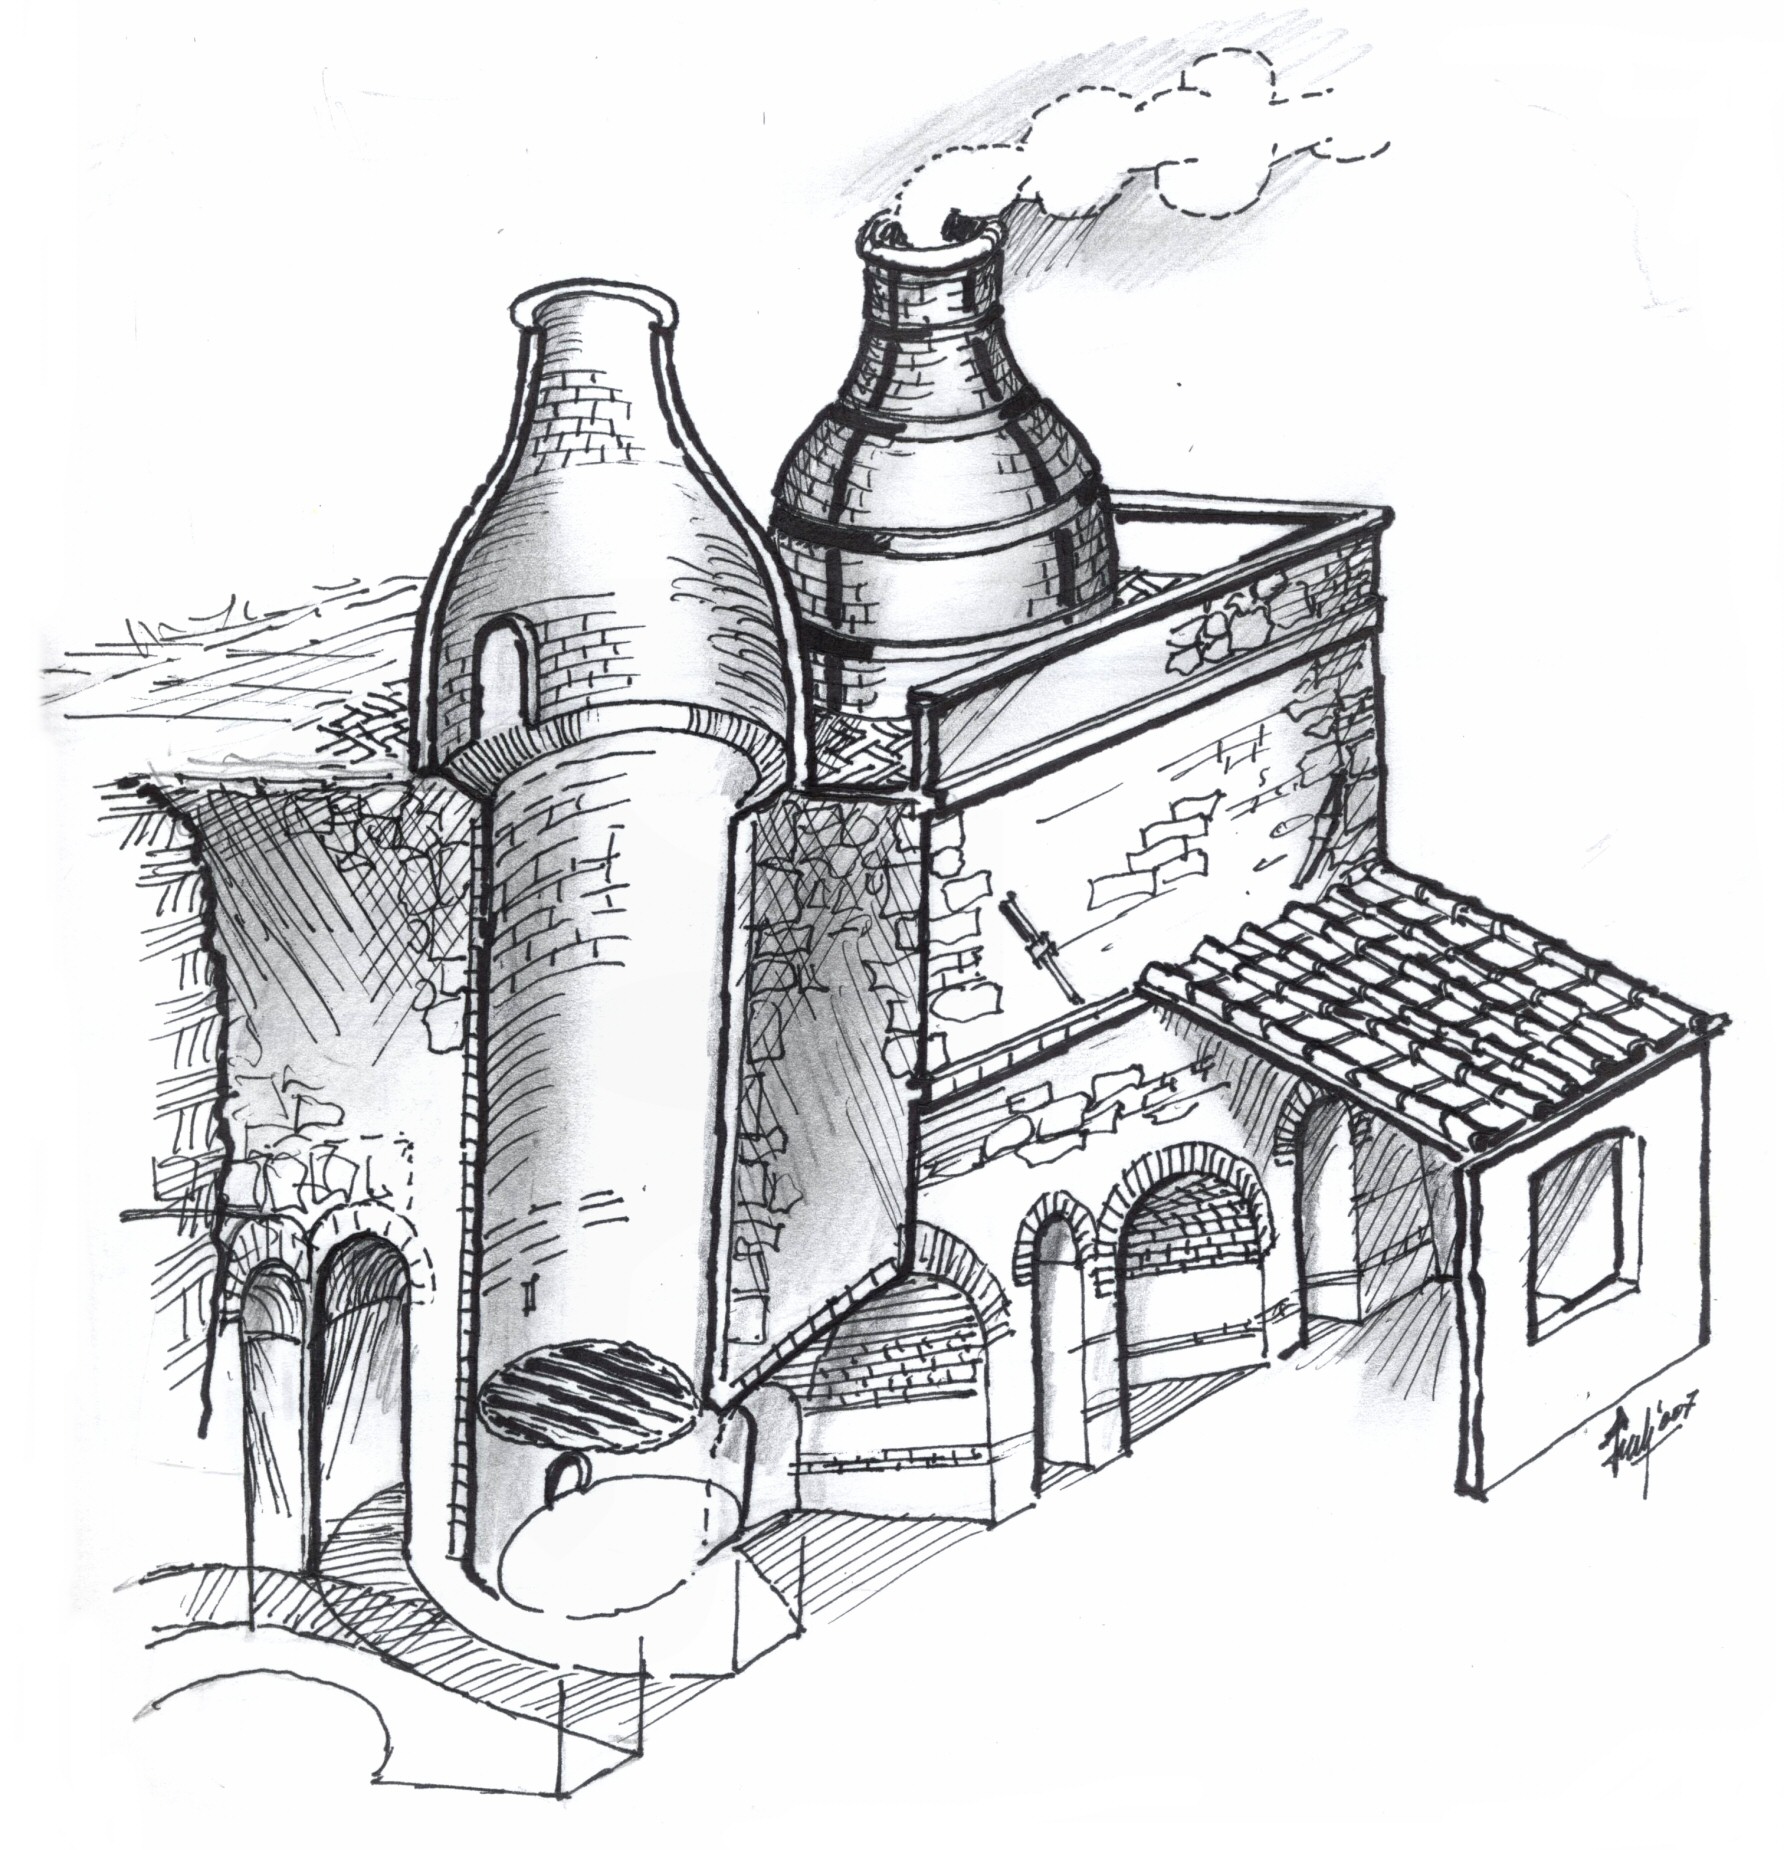 Spaccato della fornace Nuova - disegno di Luciano Scali